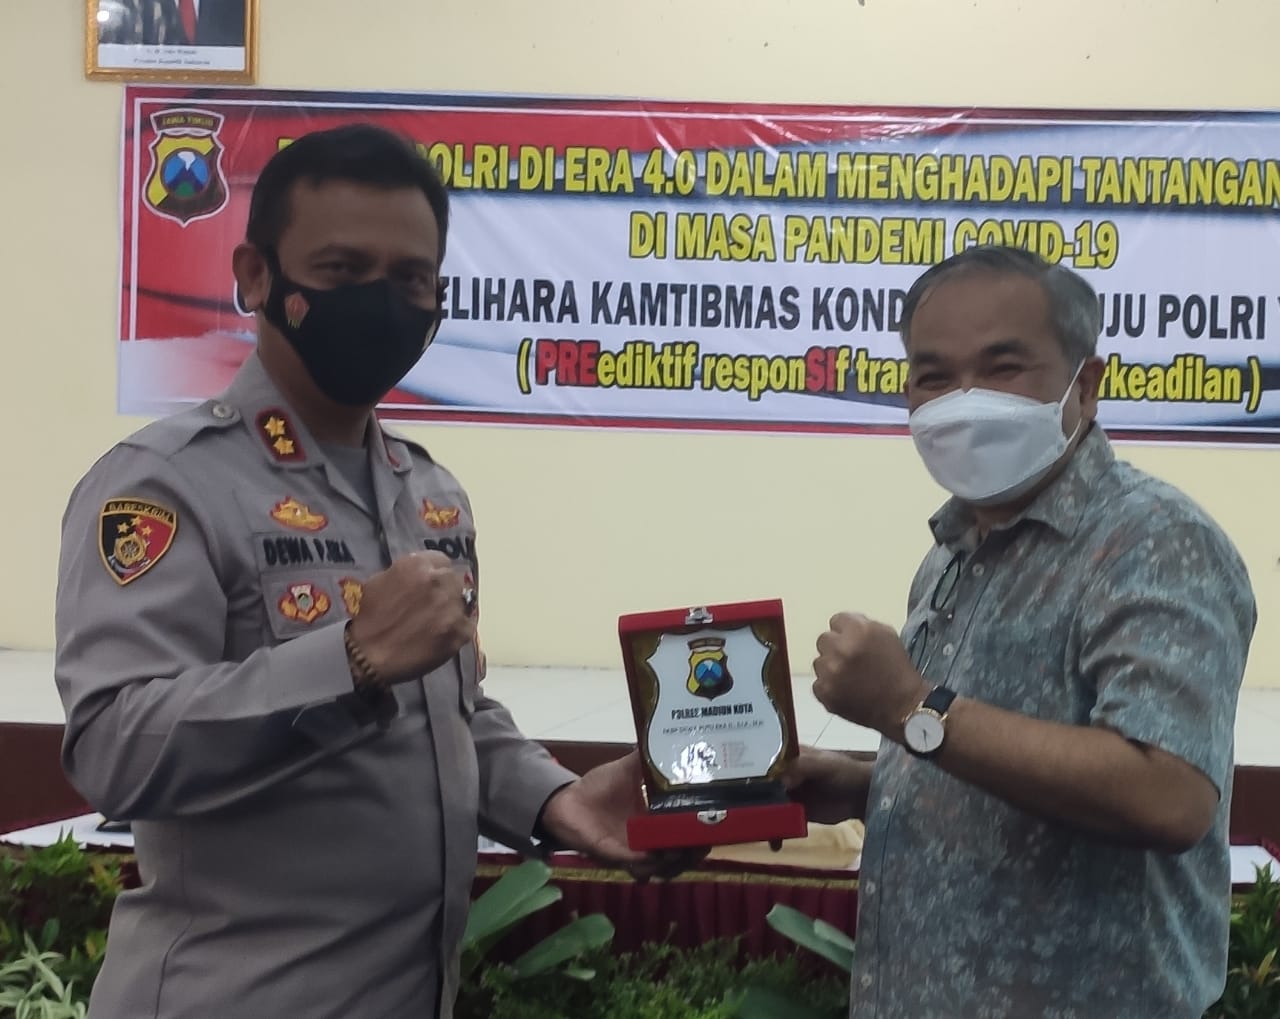 Pakar komunikasi Dr. Aqua Dwipayana dan Kapolres Madiun Kota AKBP Dewa Putu Eka Darmawan. foto/istimewa